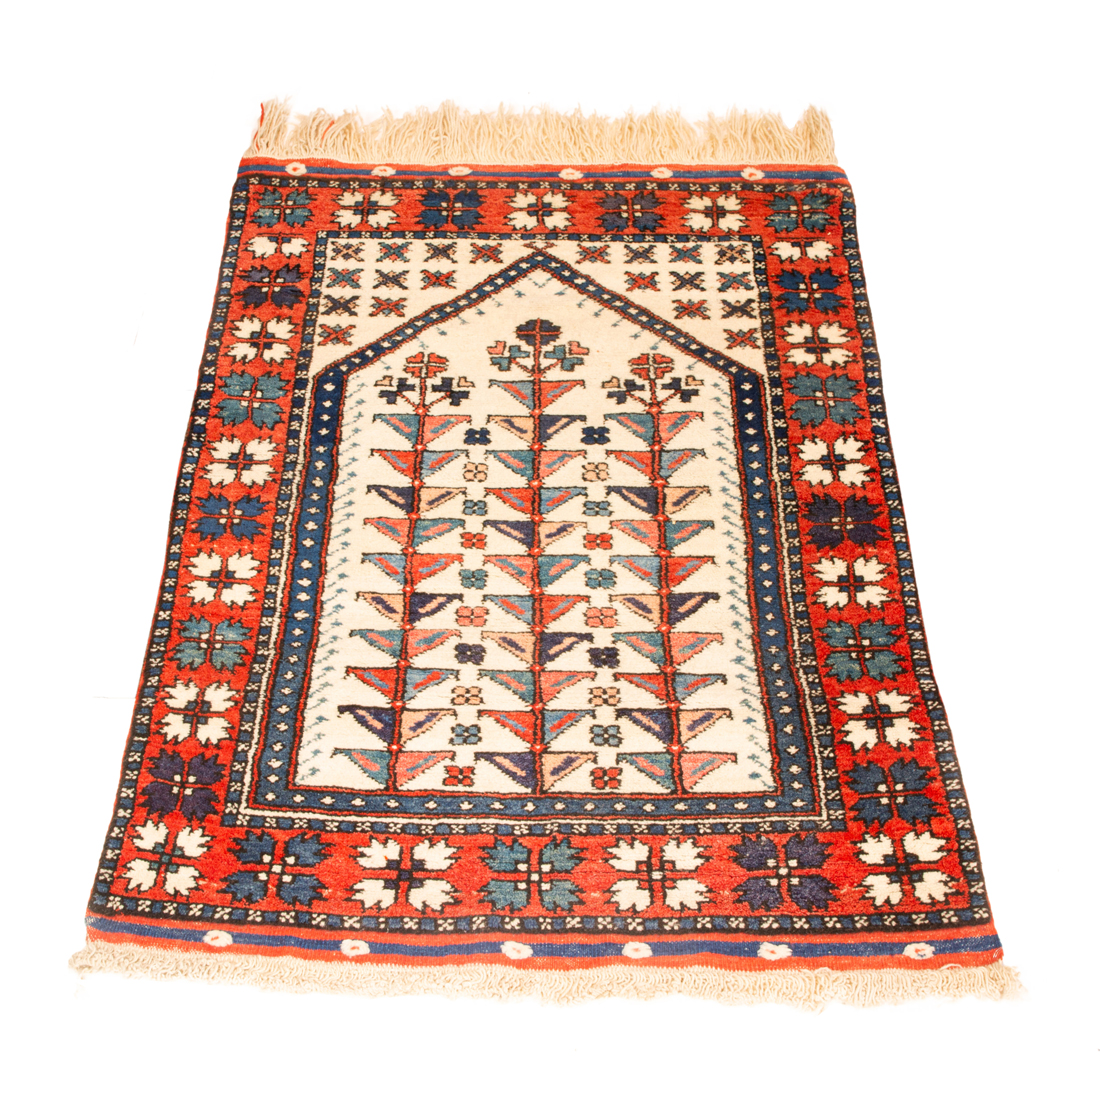 TURKISH CARPET Turkish carpet,